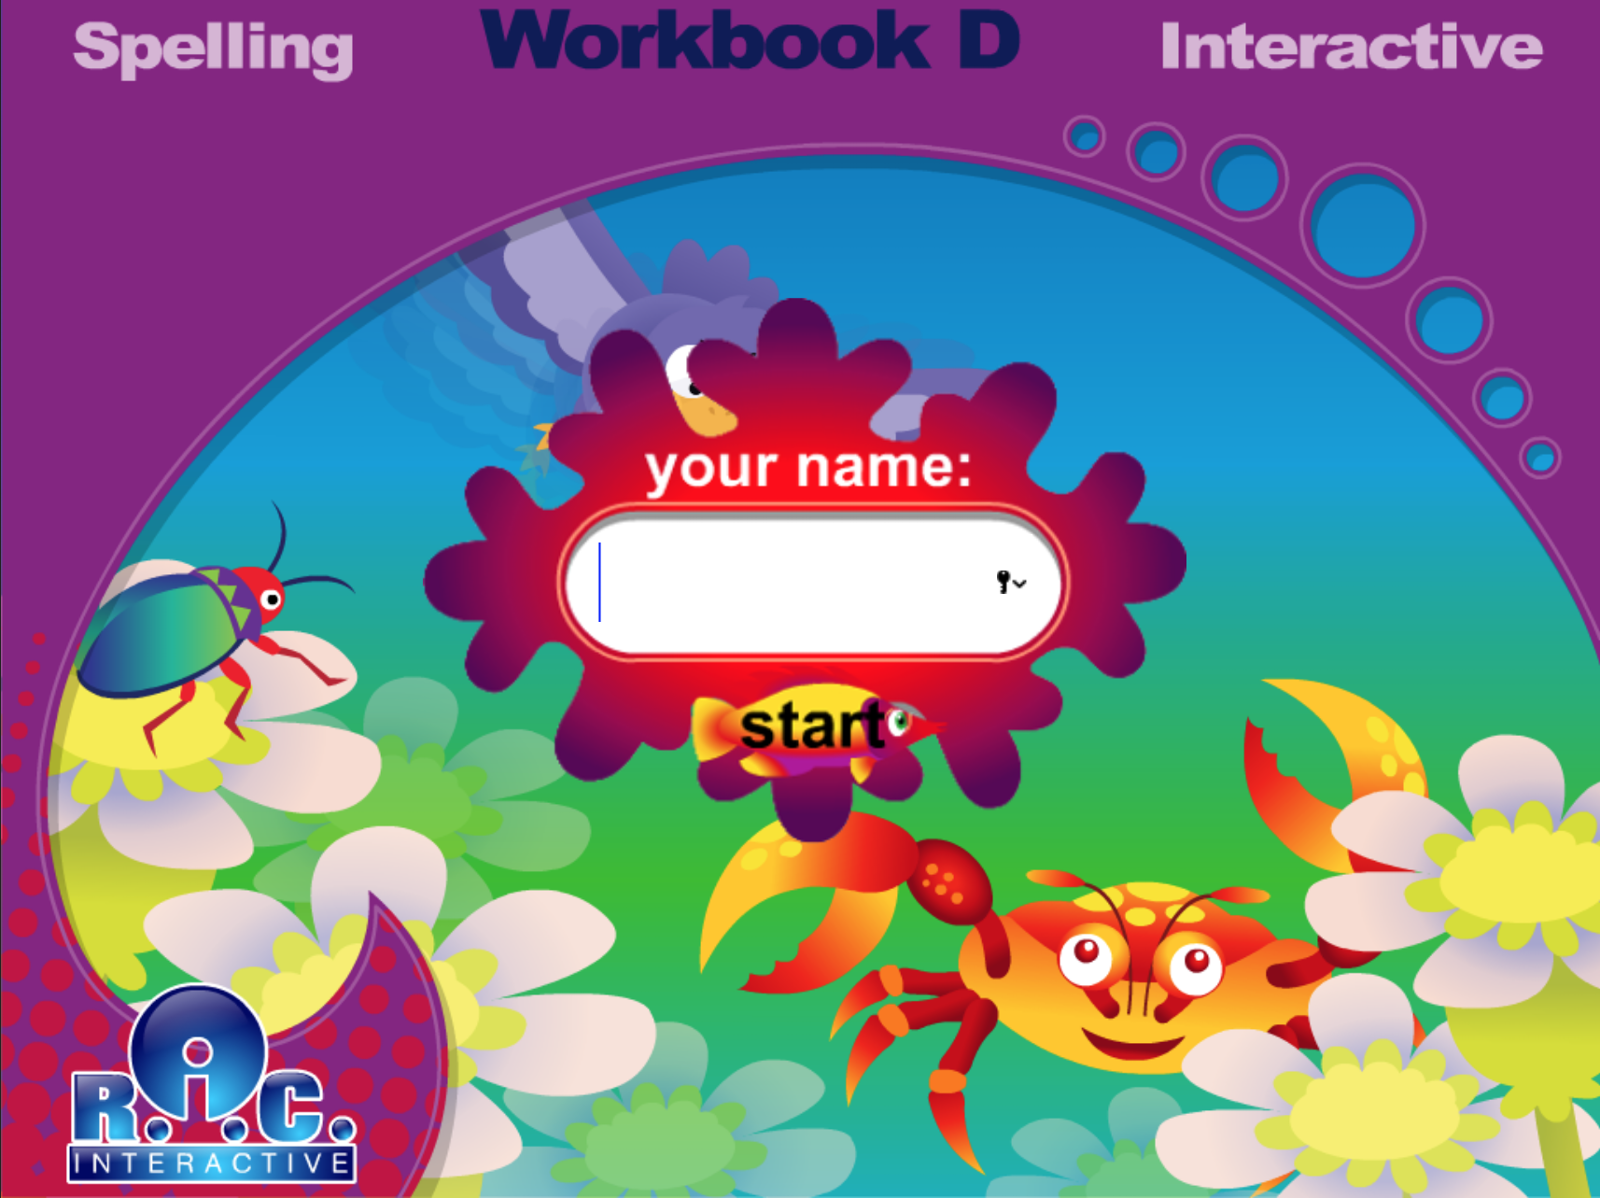 Spelling Workbook Game